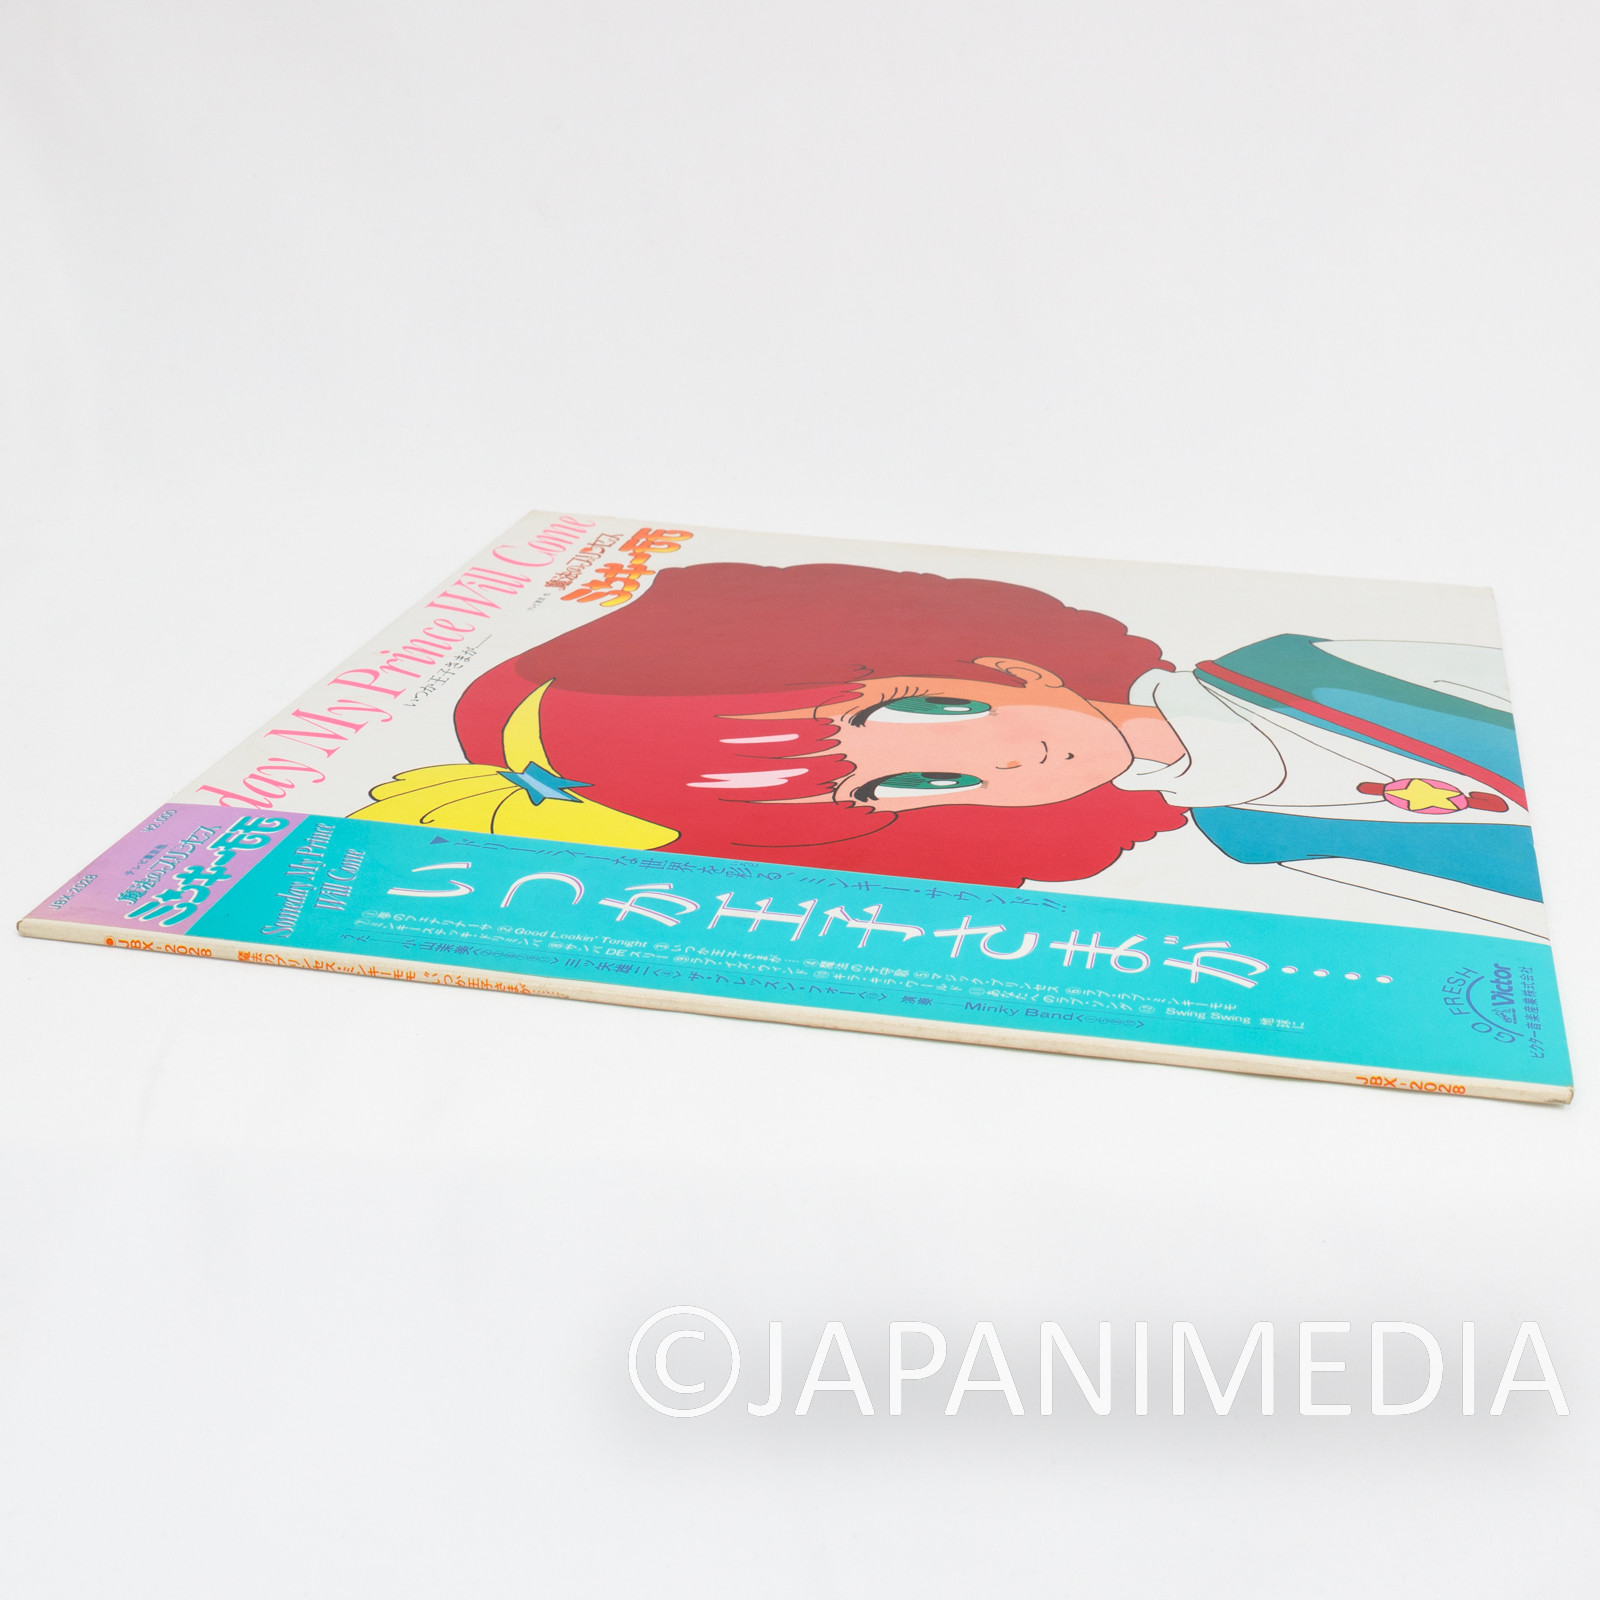 Magical Princess Minky Momo TV Anime Song Collection 12" Vinyl LP Record JBX2028